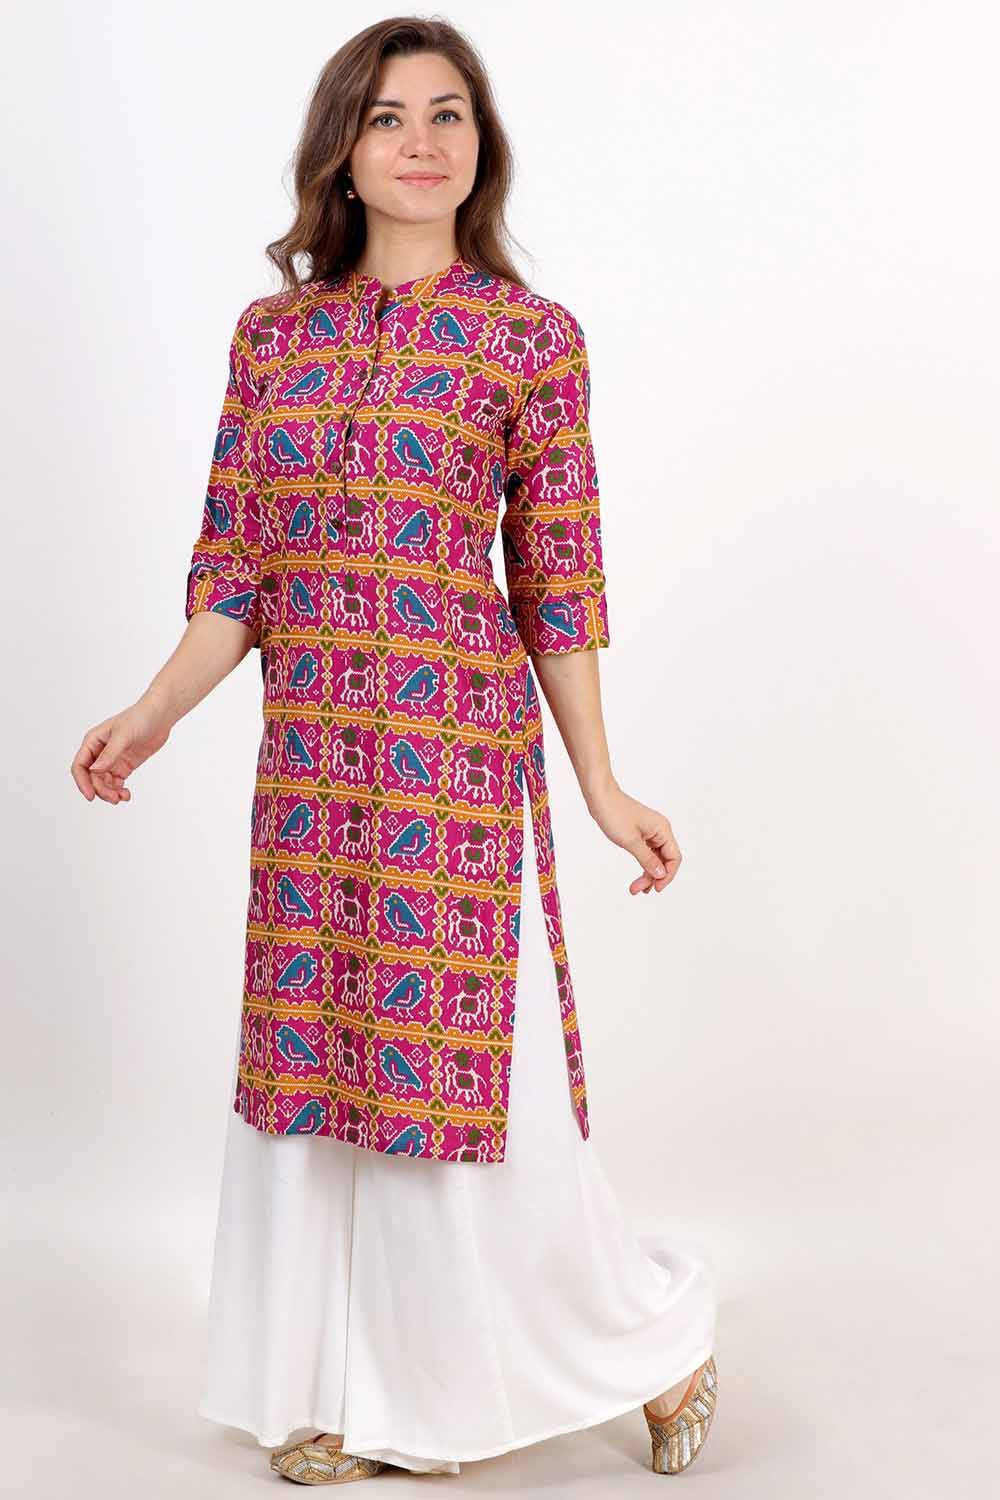 Patola love | Long blouse designs, Unique blouse designs, Stylish dresses  for girls